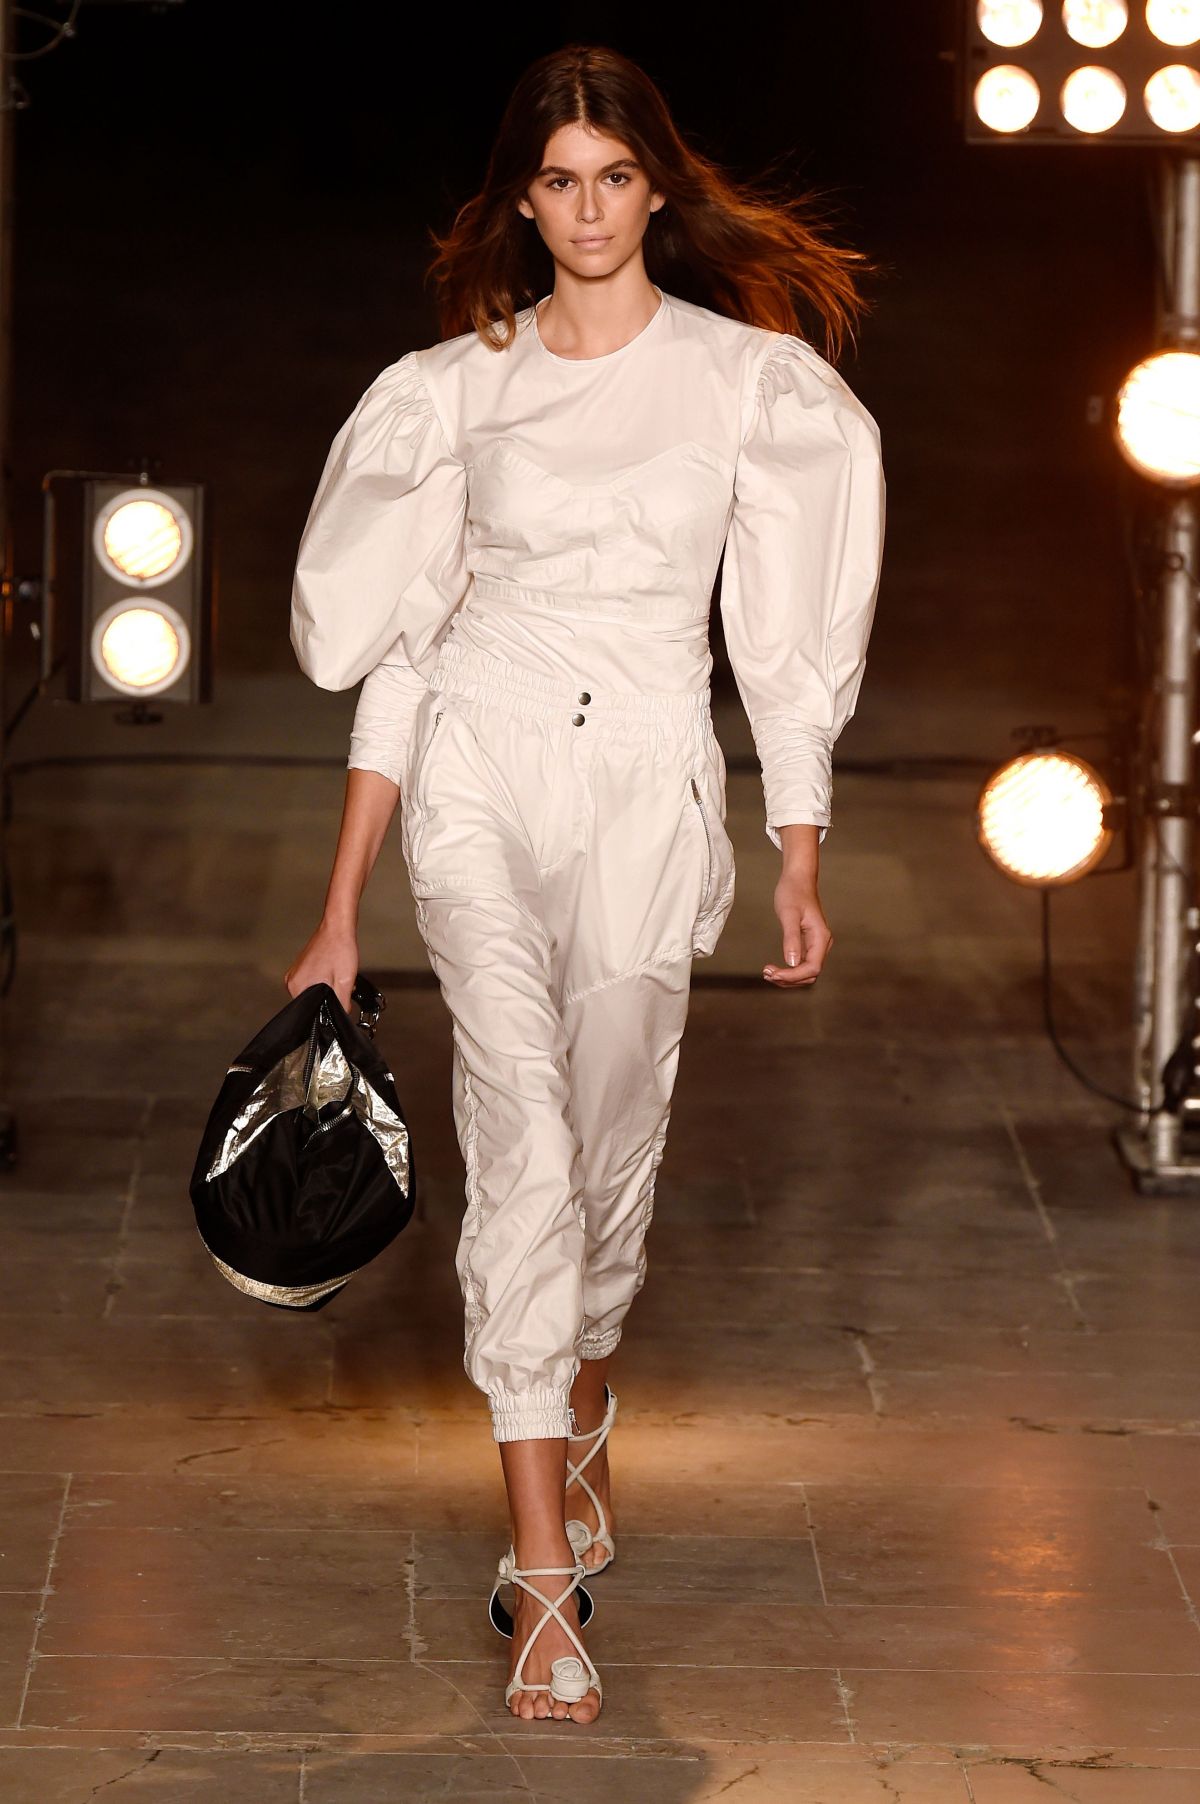 KAIA GERBER at Isabel Marant Fashion Show at Paris Fashion Week 09/28 ...